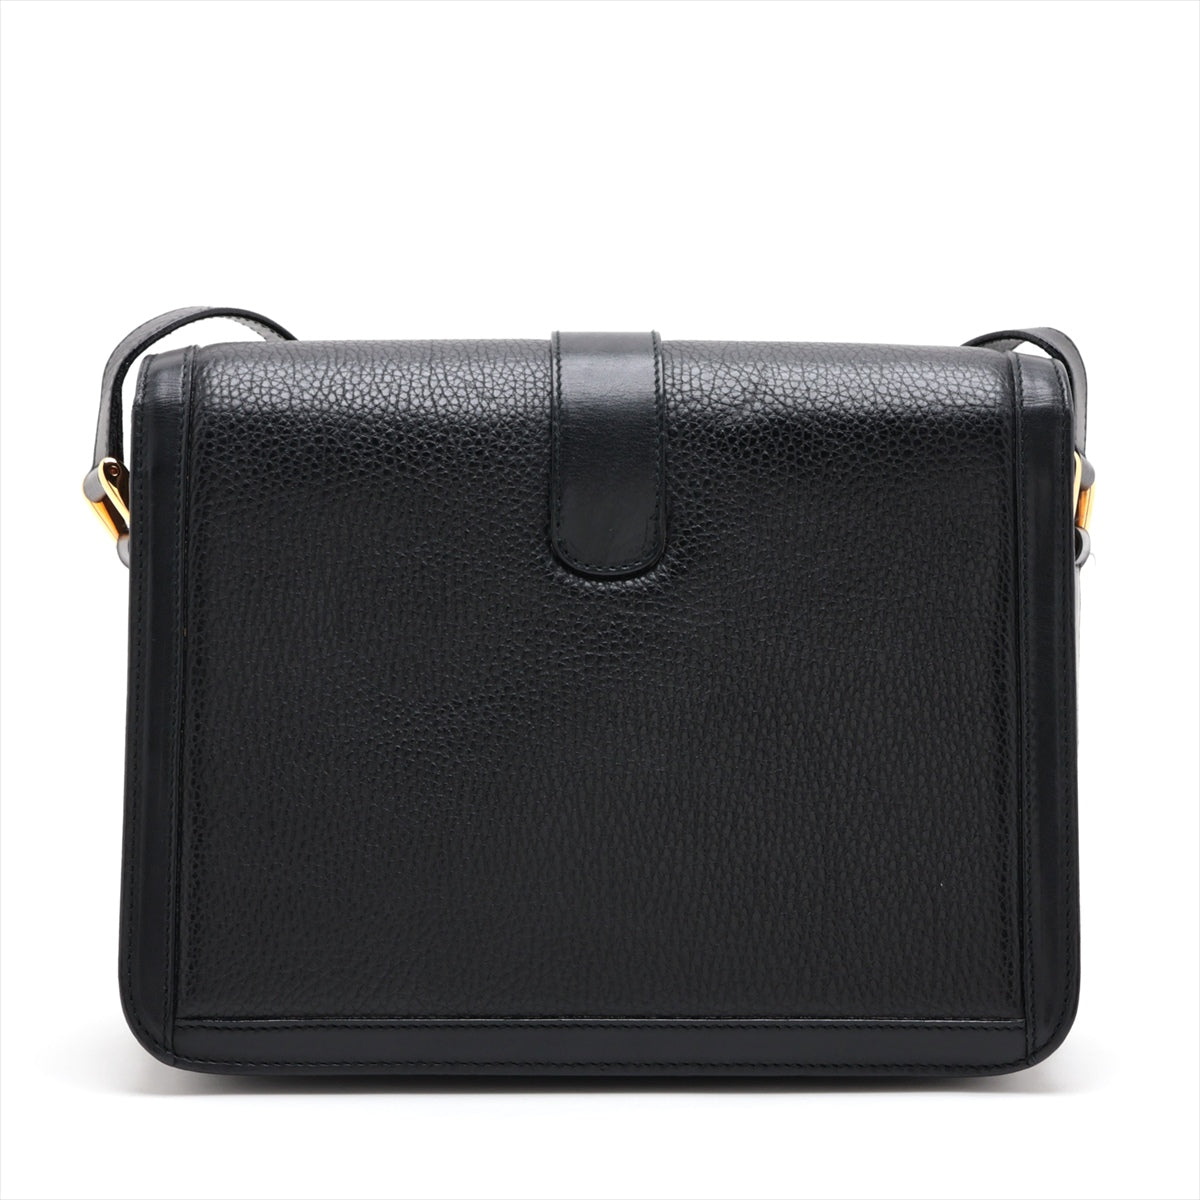 Gucci Leather Shoulder bag Black 001-113-1537